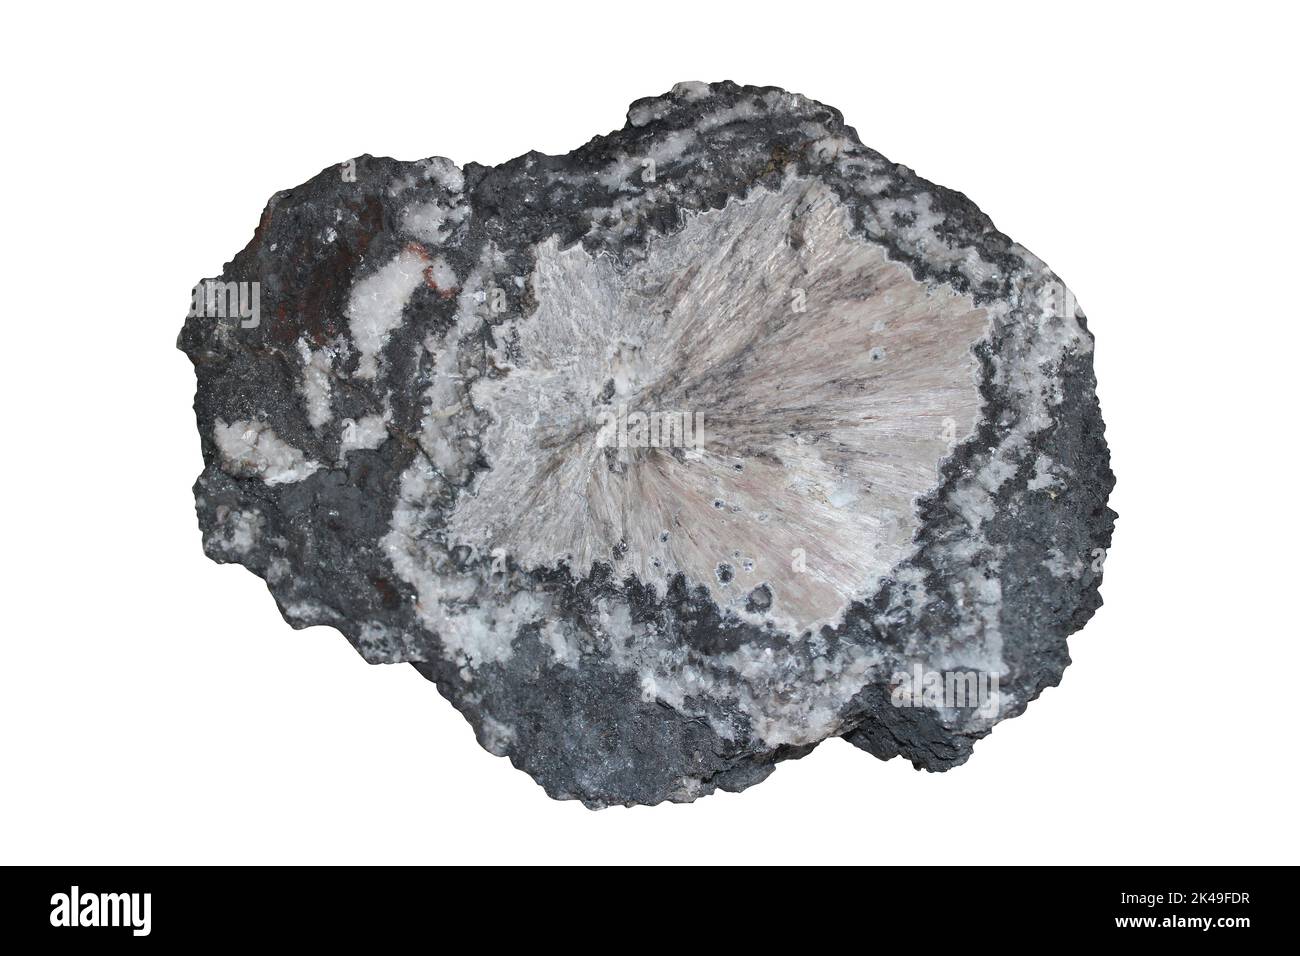 Mendipite un minéral oxyhalogéné de plomb trouvé dans les collines de Mendip, Somerset, Angleterre Banque D'Images